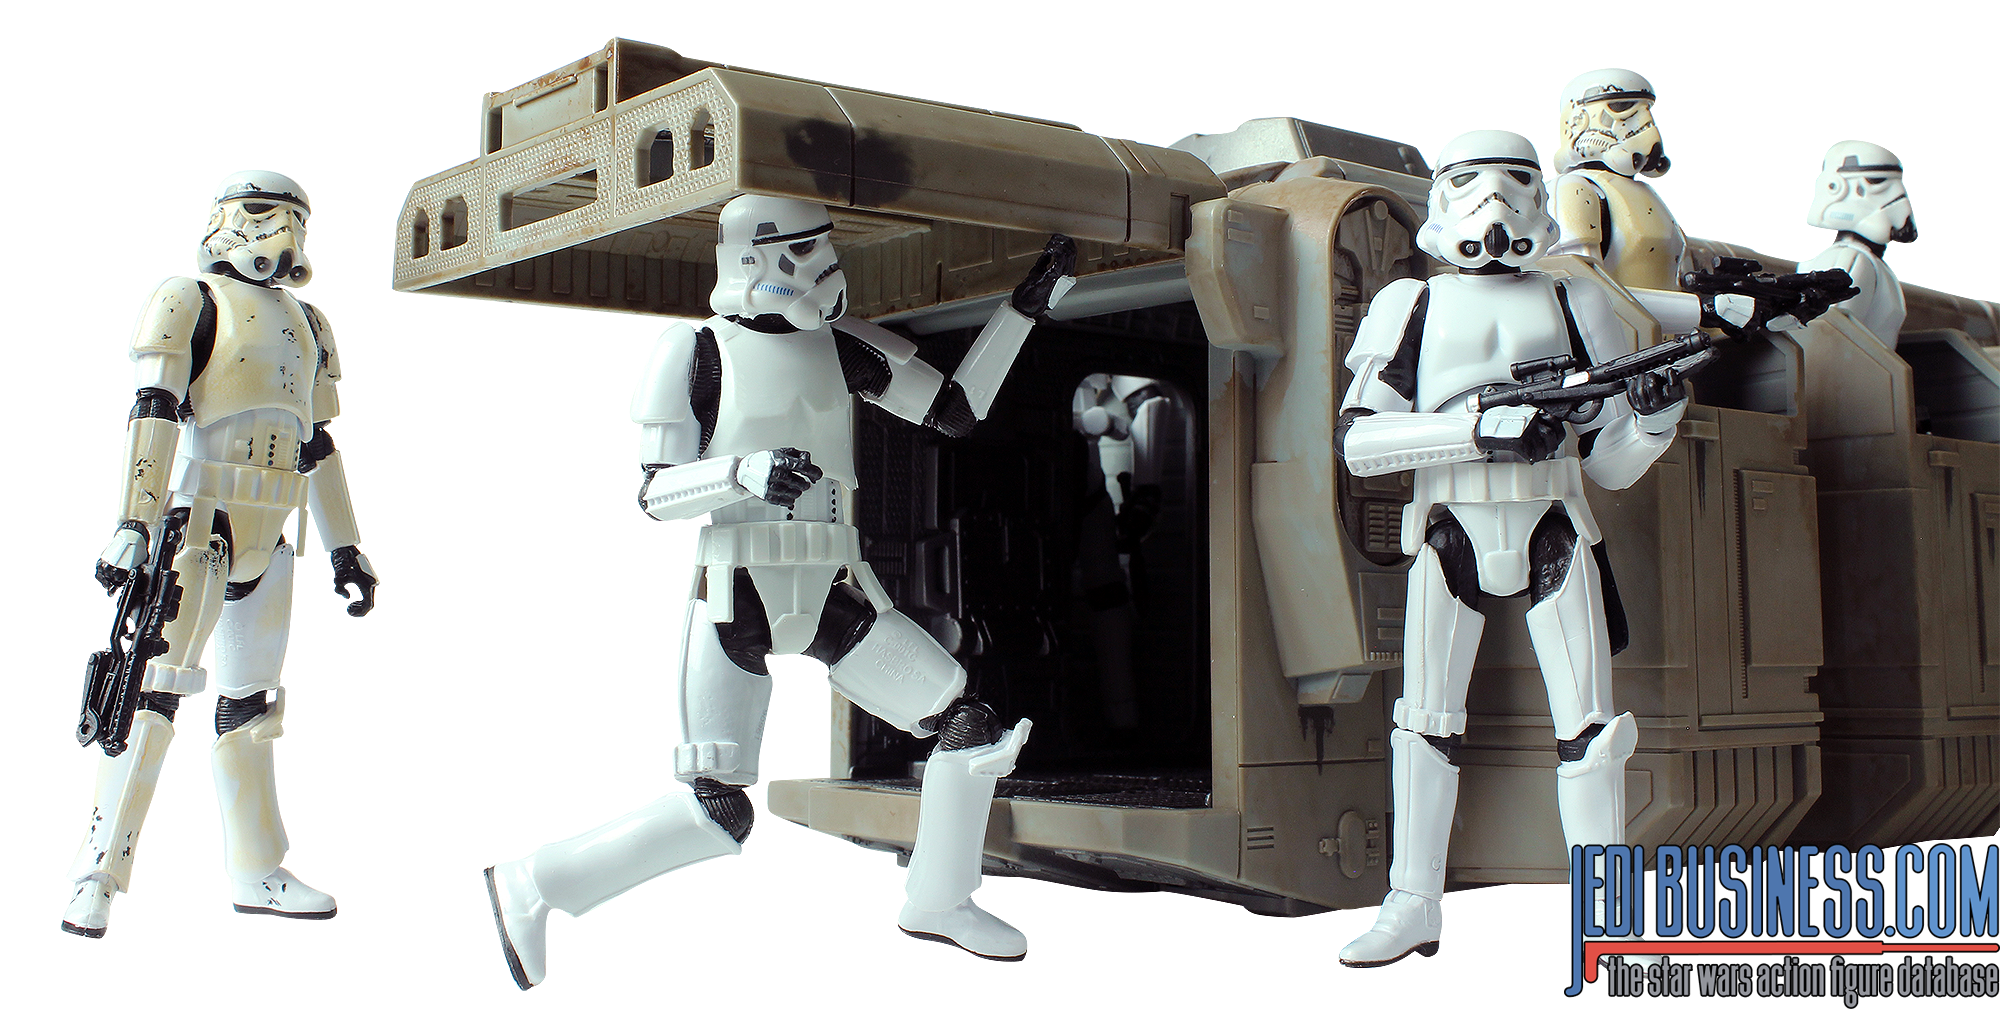 Imperial Troop Transport